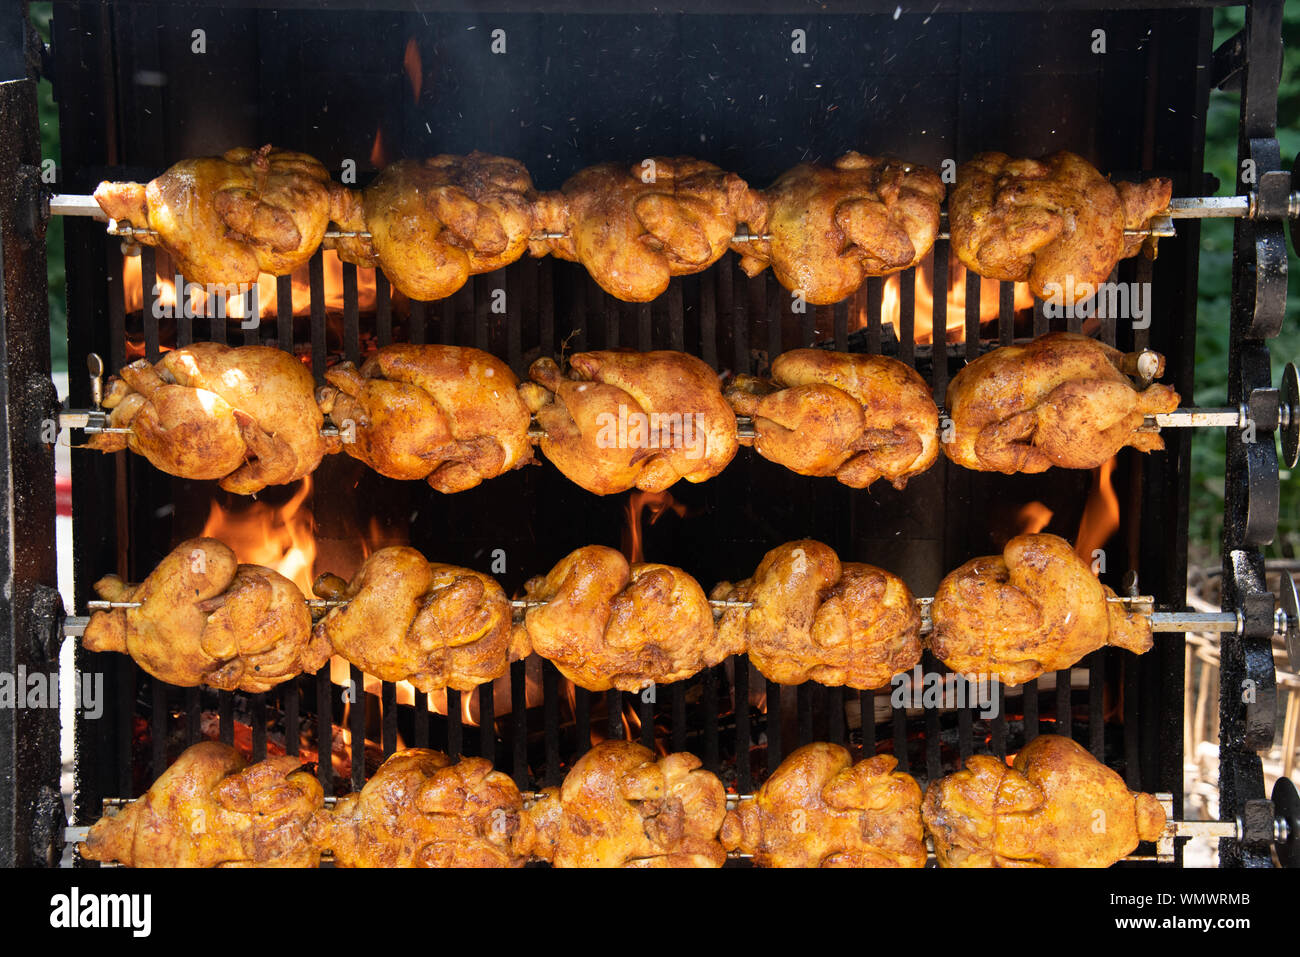 Hintergrund von gegrilltem Hühnchen am Lebensmittelmarkt in Essen Lkw mit schönen leckeren Hähnchen vor einem Gaskamin Stockfoto